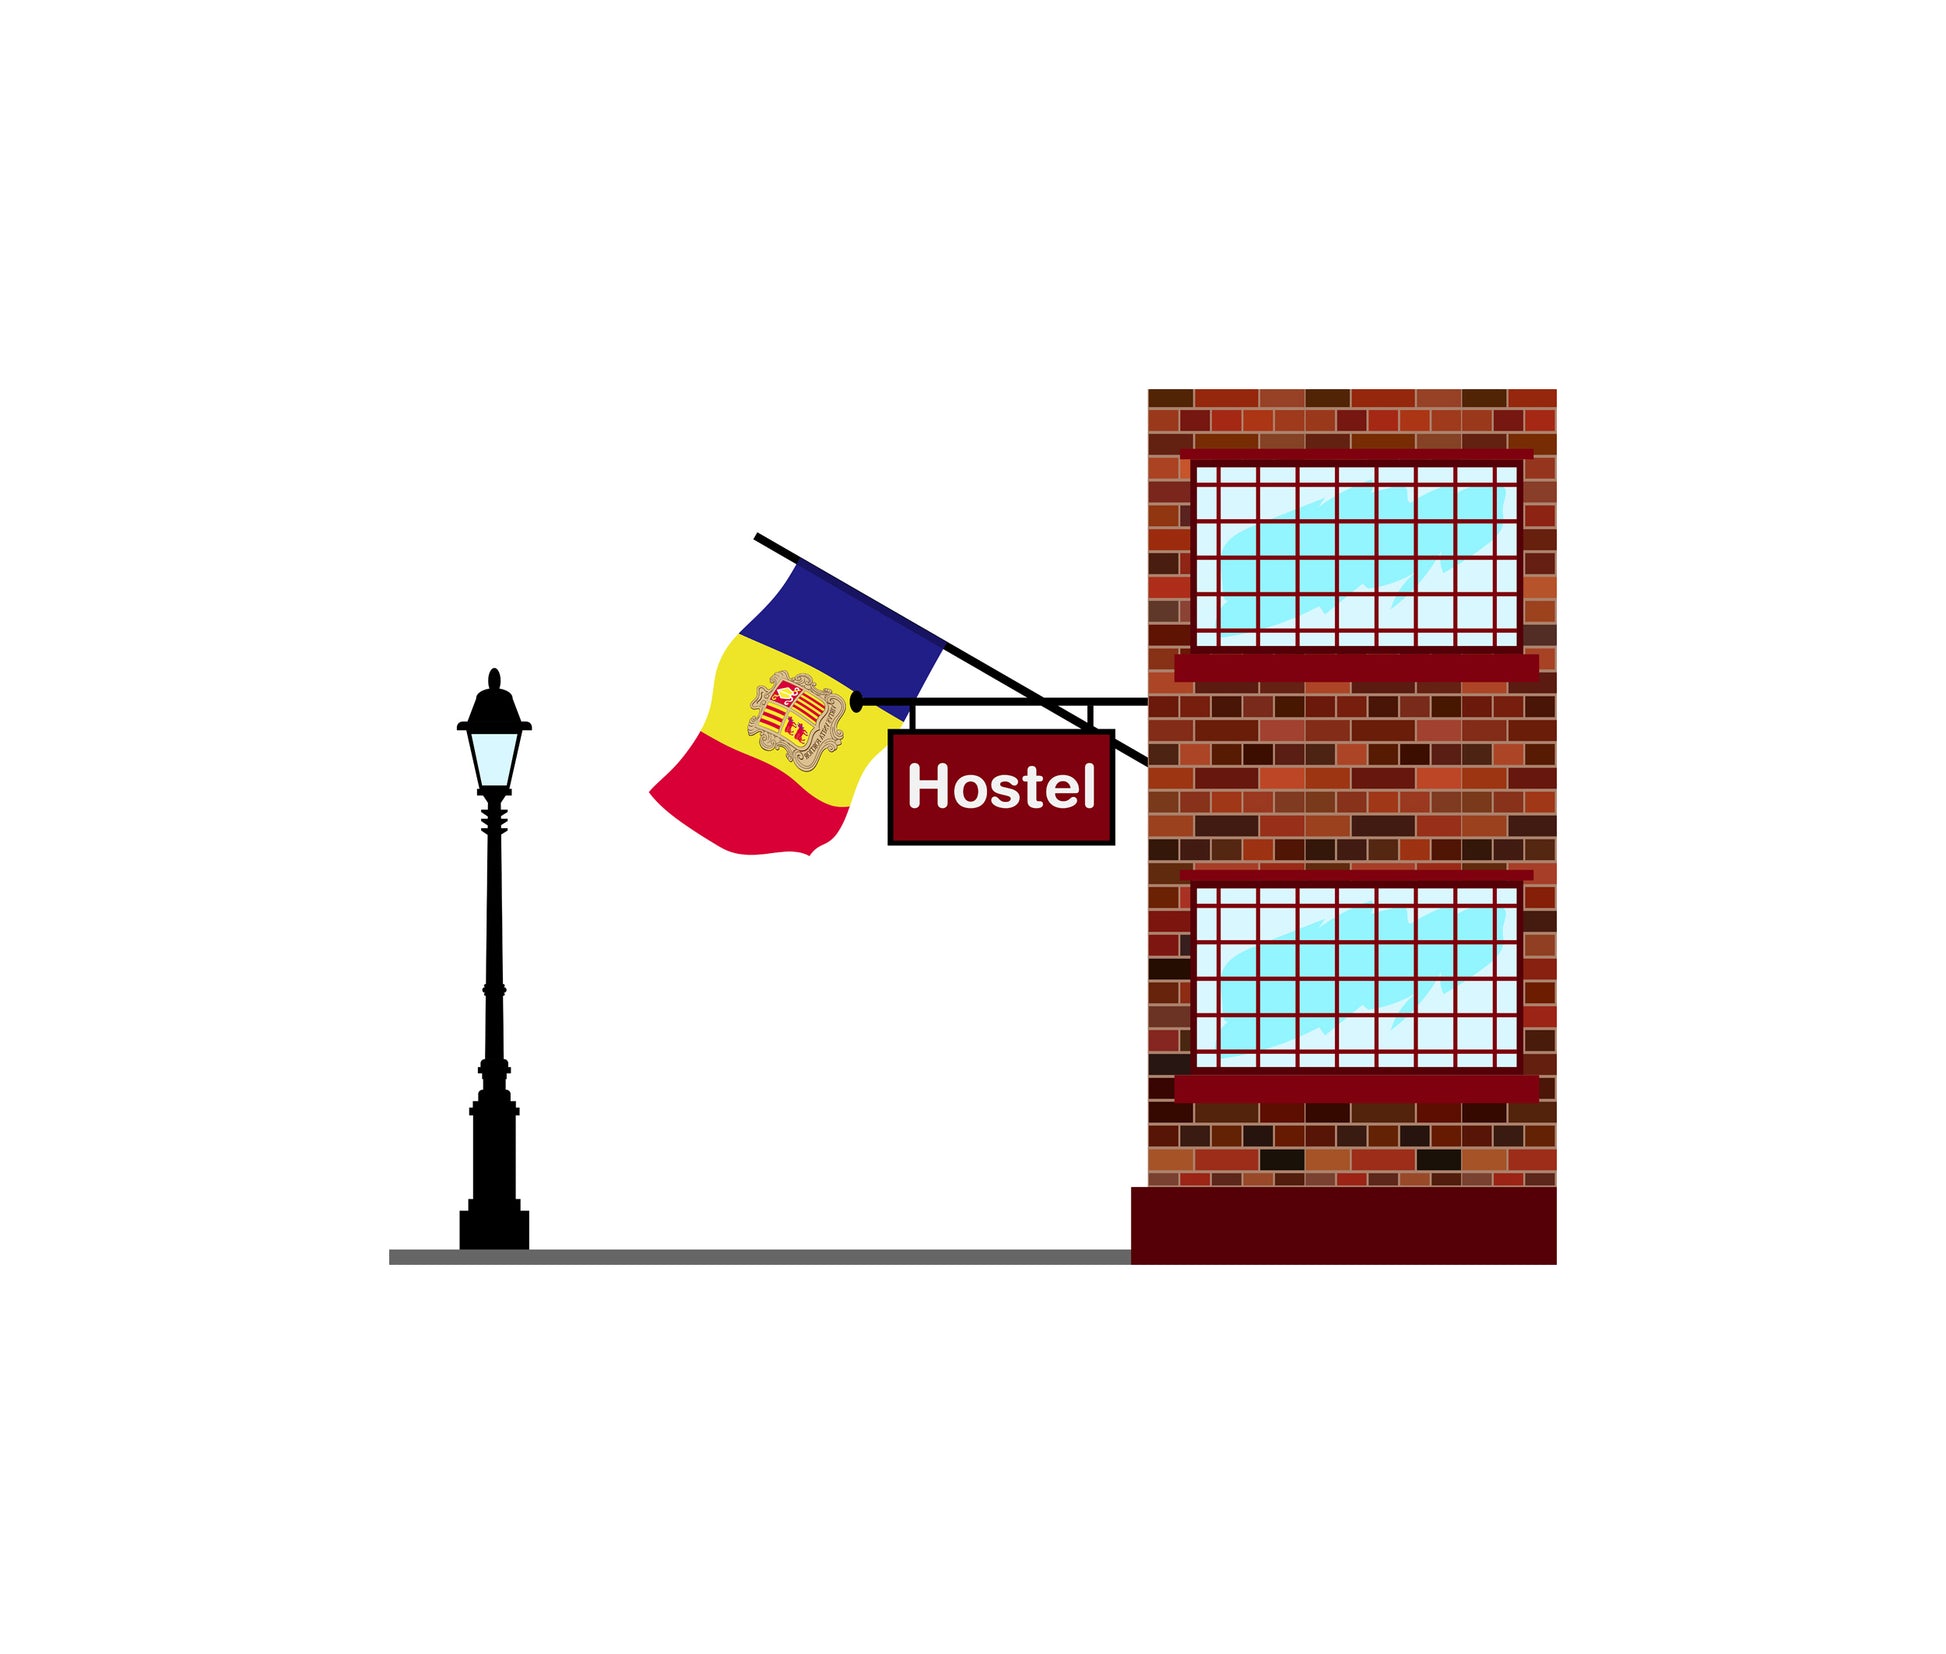 Andorra Hostels Hotel Vector Illustration